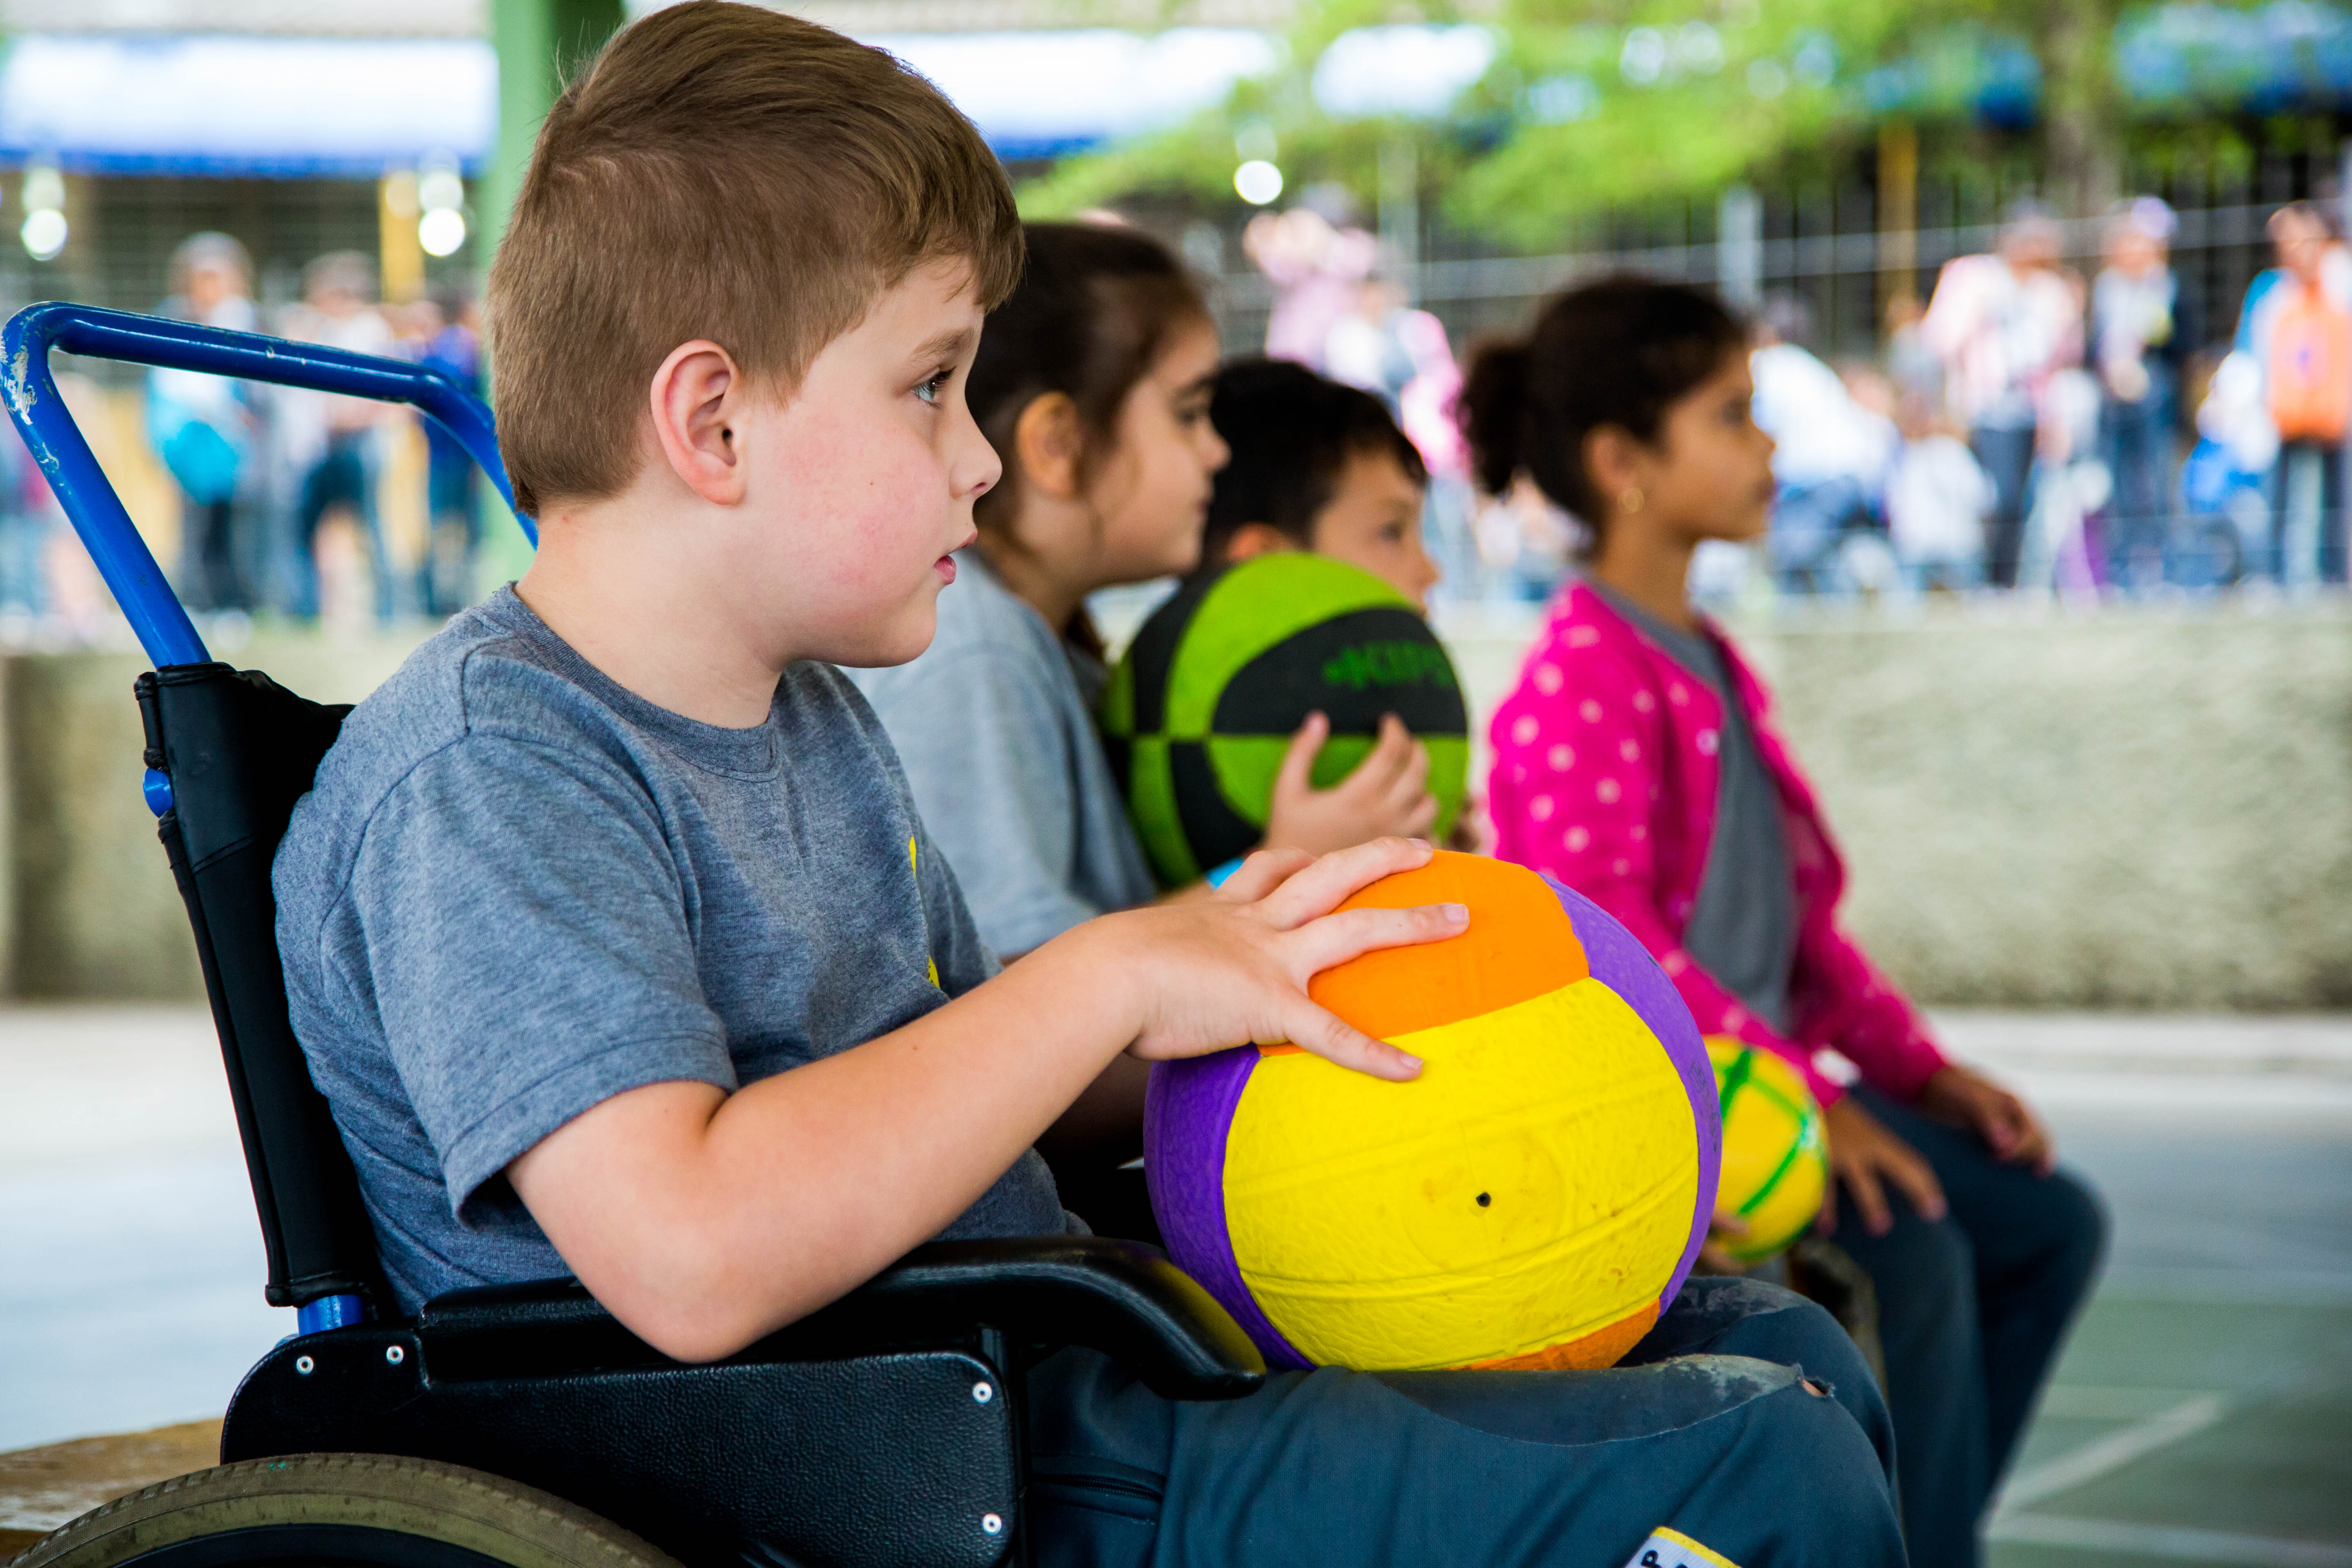 Descrições imagens: Em uma quadra esportiva de escola, um garoto de nove anos em uma cadeira de rodas segura uma bola de vôlei. Ao fundo, outros estudantes estão sentados em cadeiras